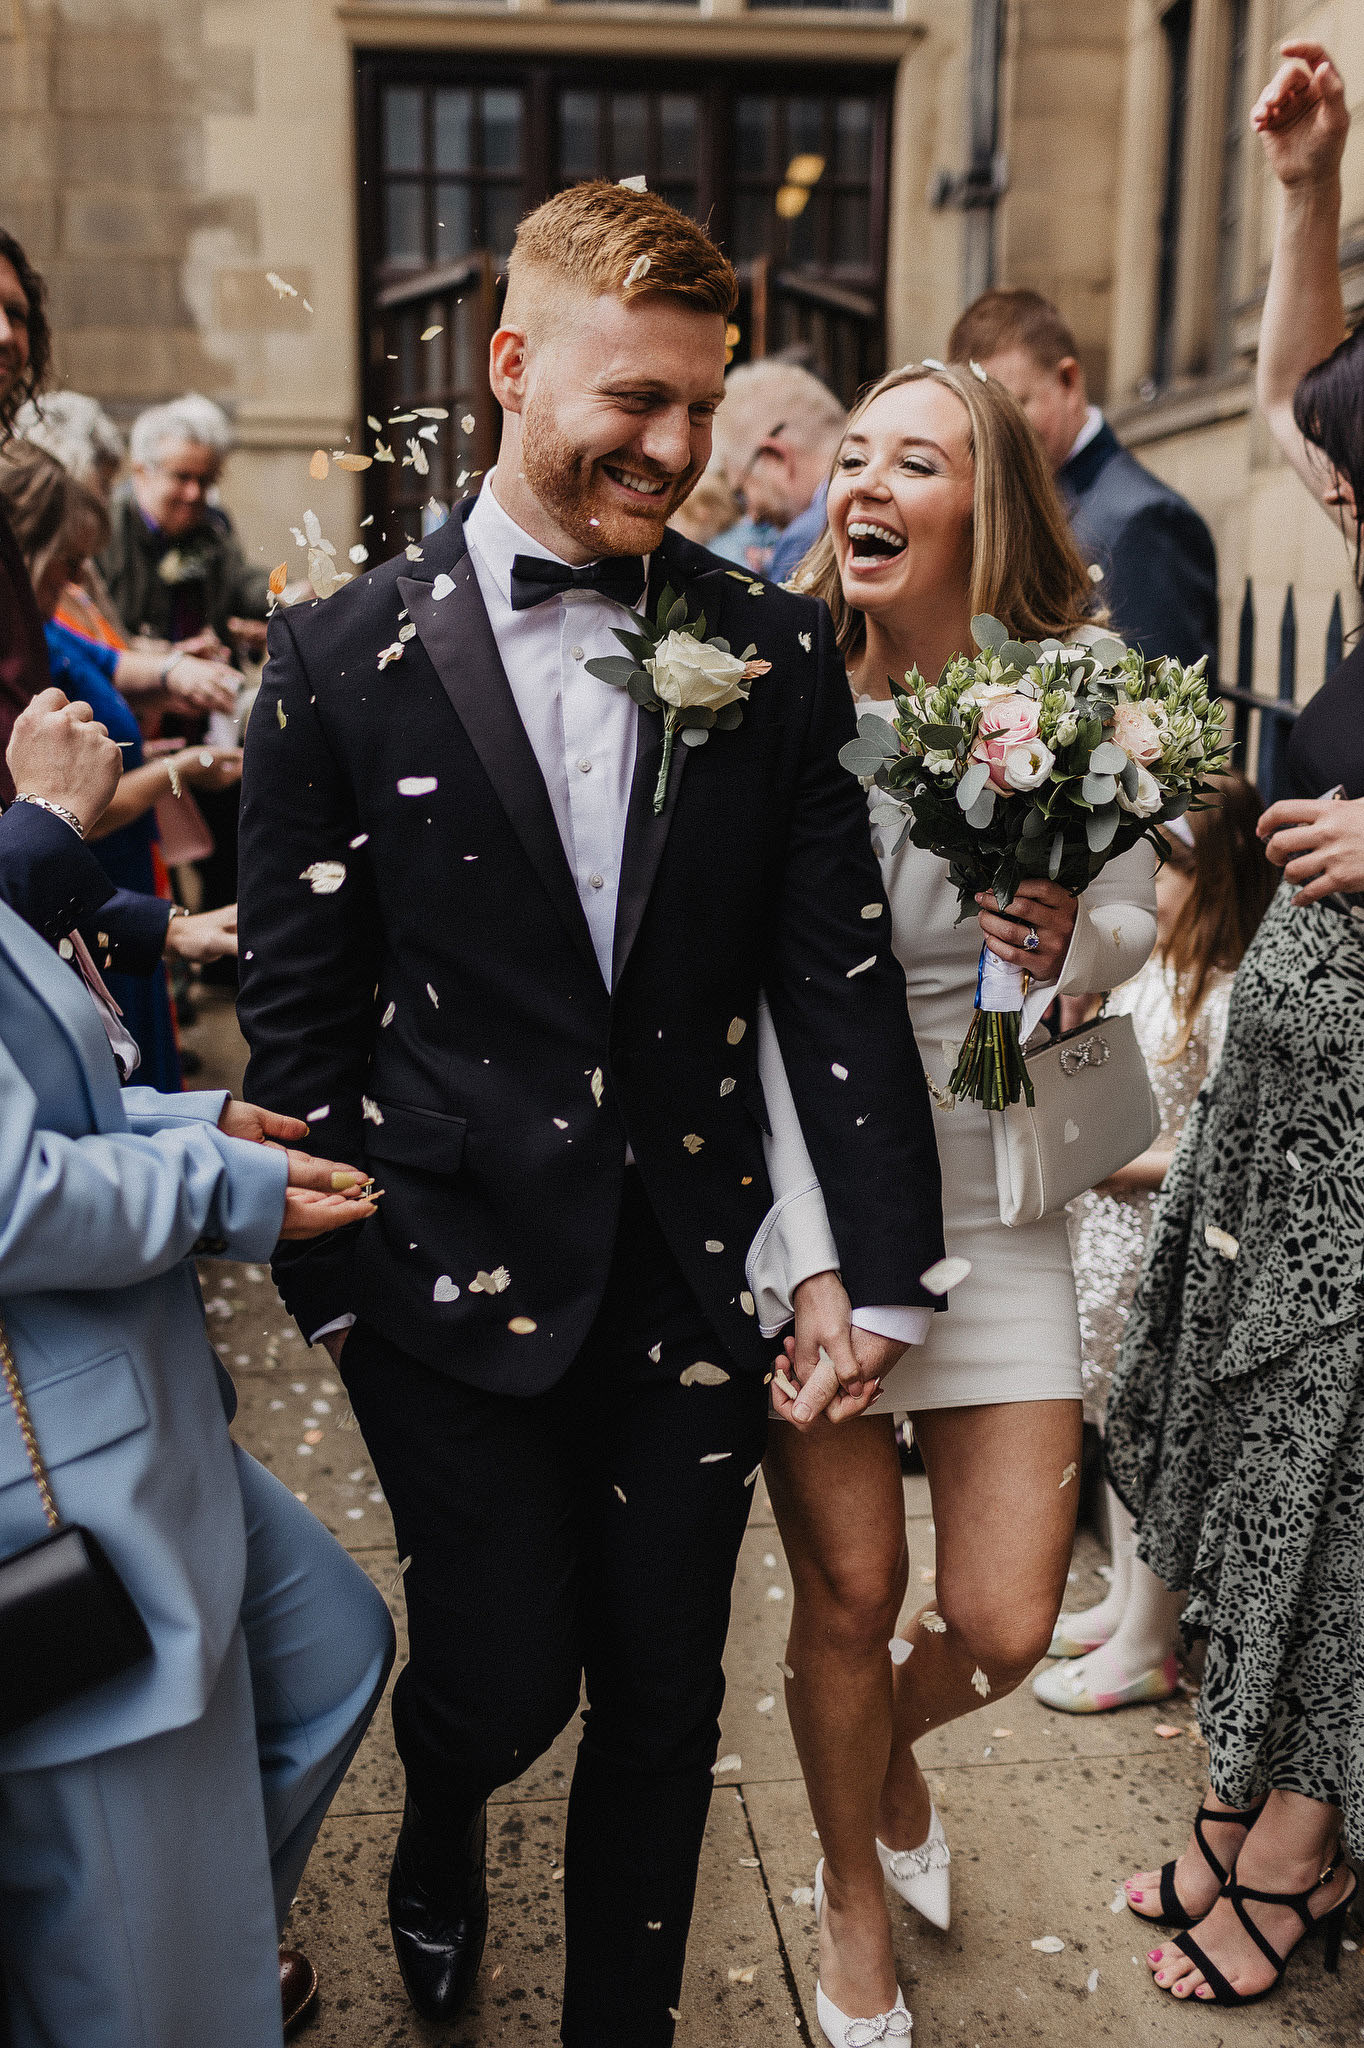 Joyful newlyweds with confetti exit celebration.